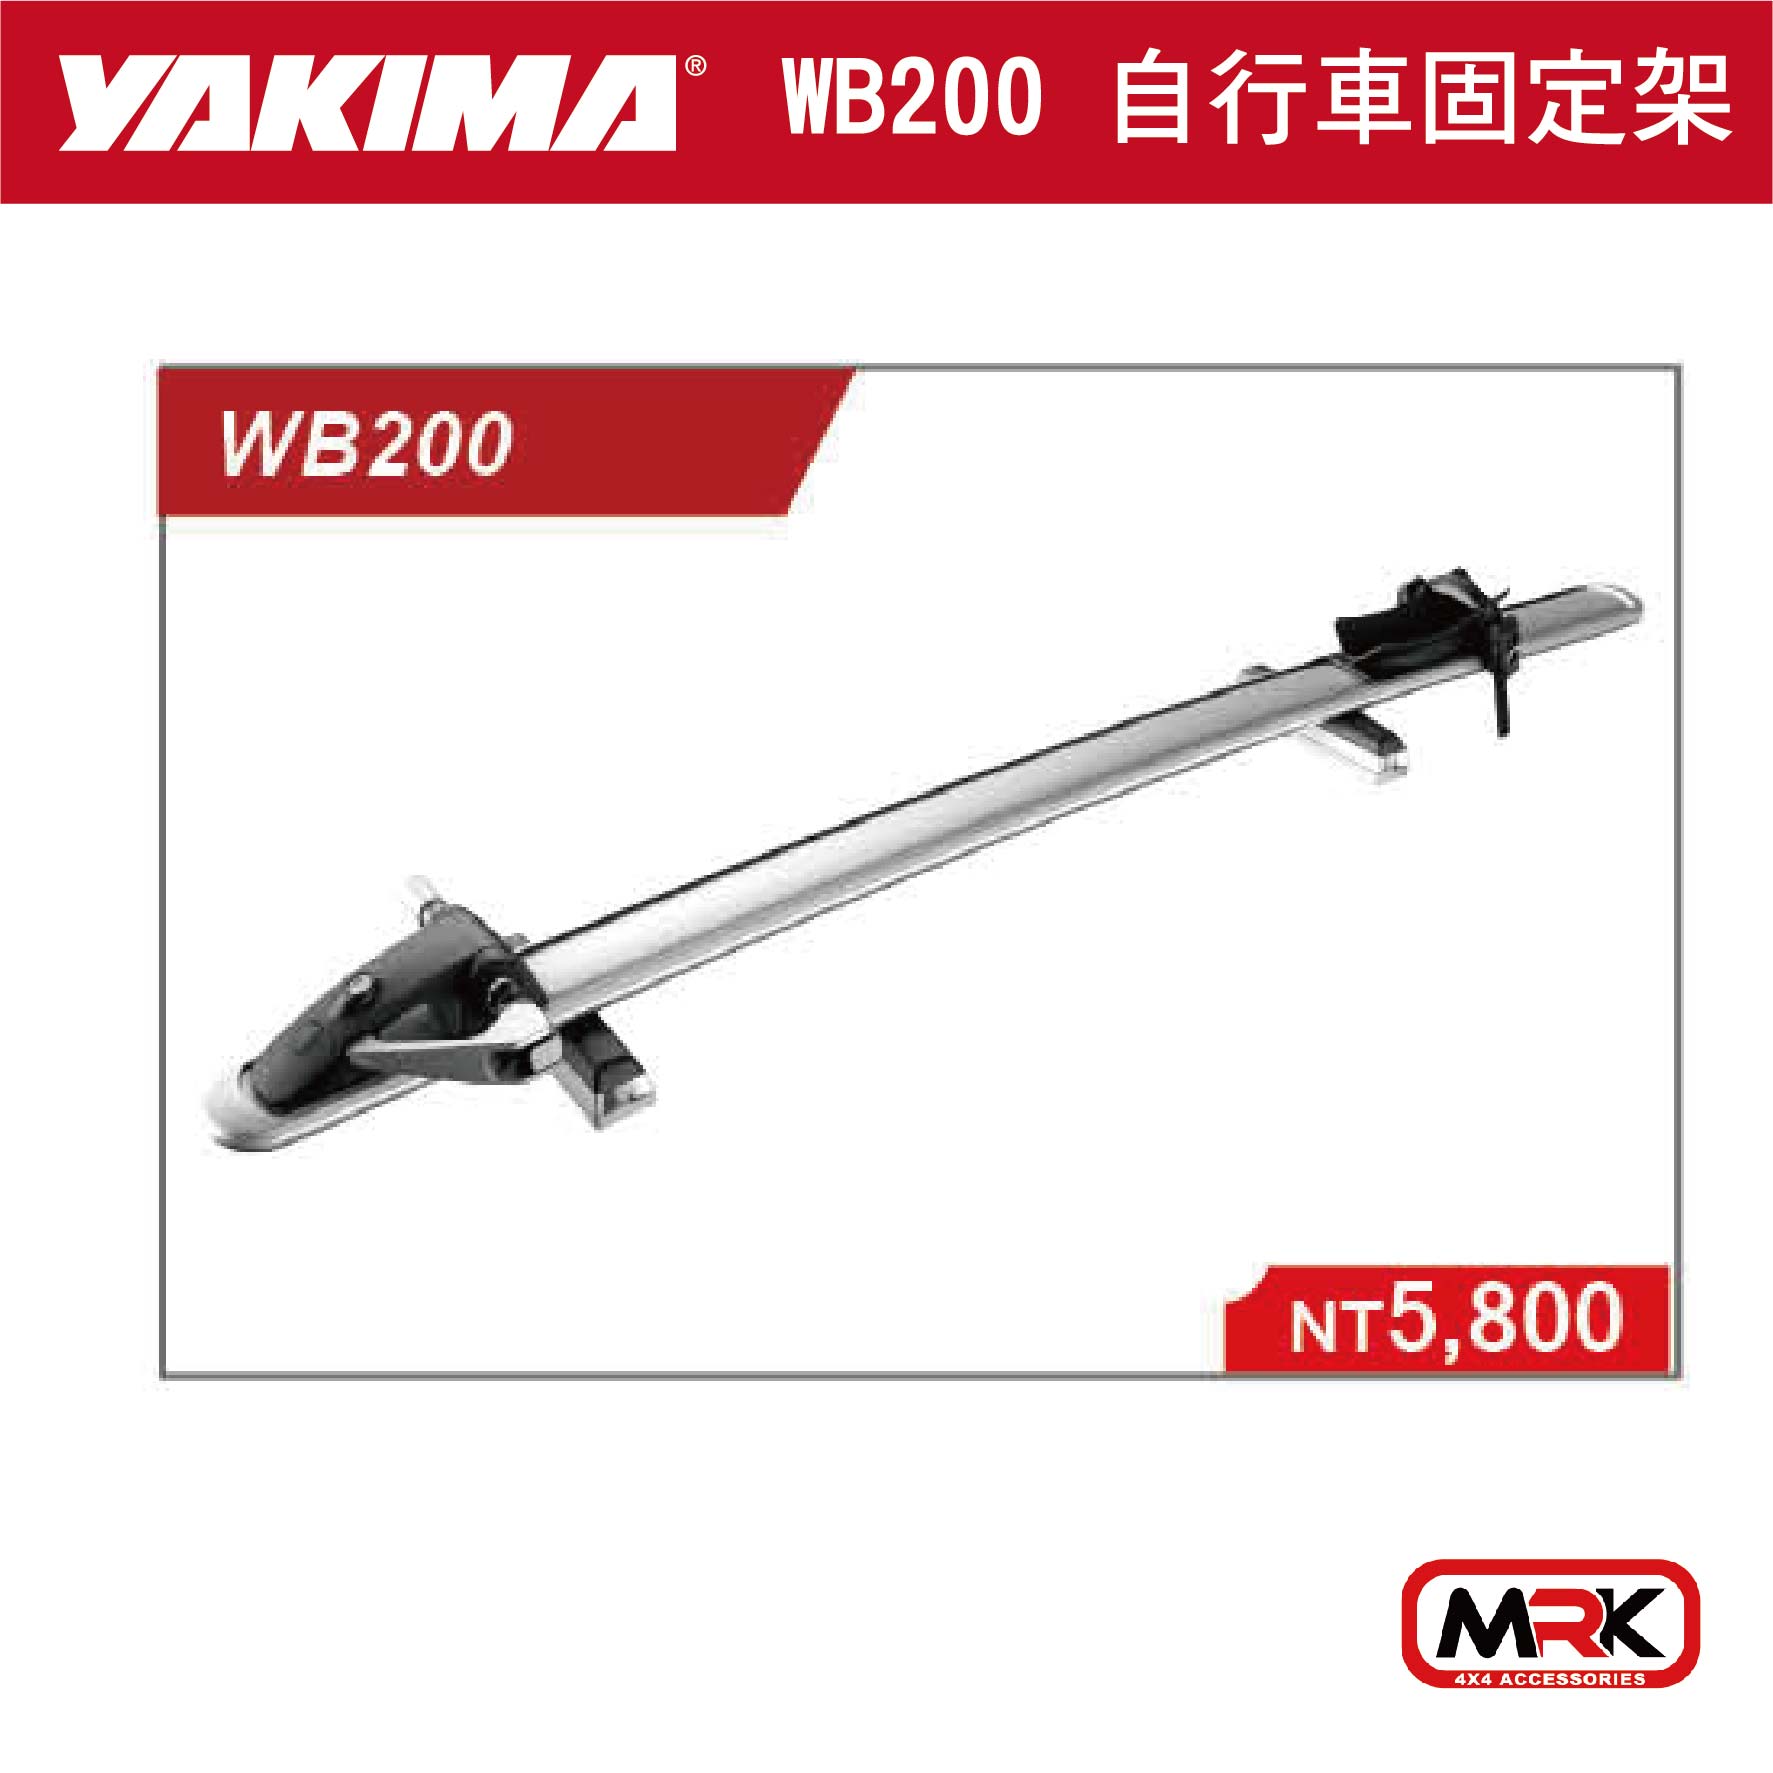 【MRK】YAKIMA WB200 自行車固定架 自行車攜車架